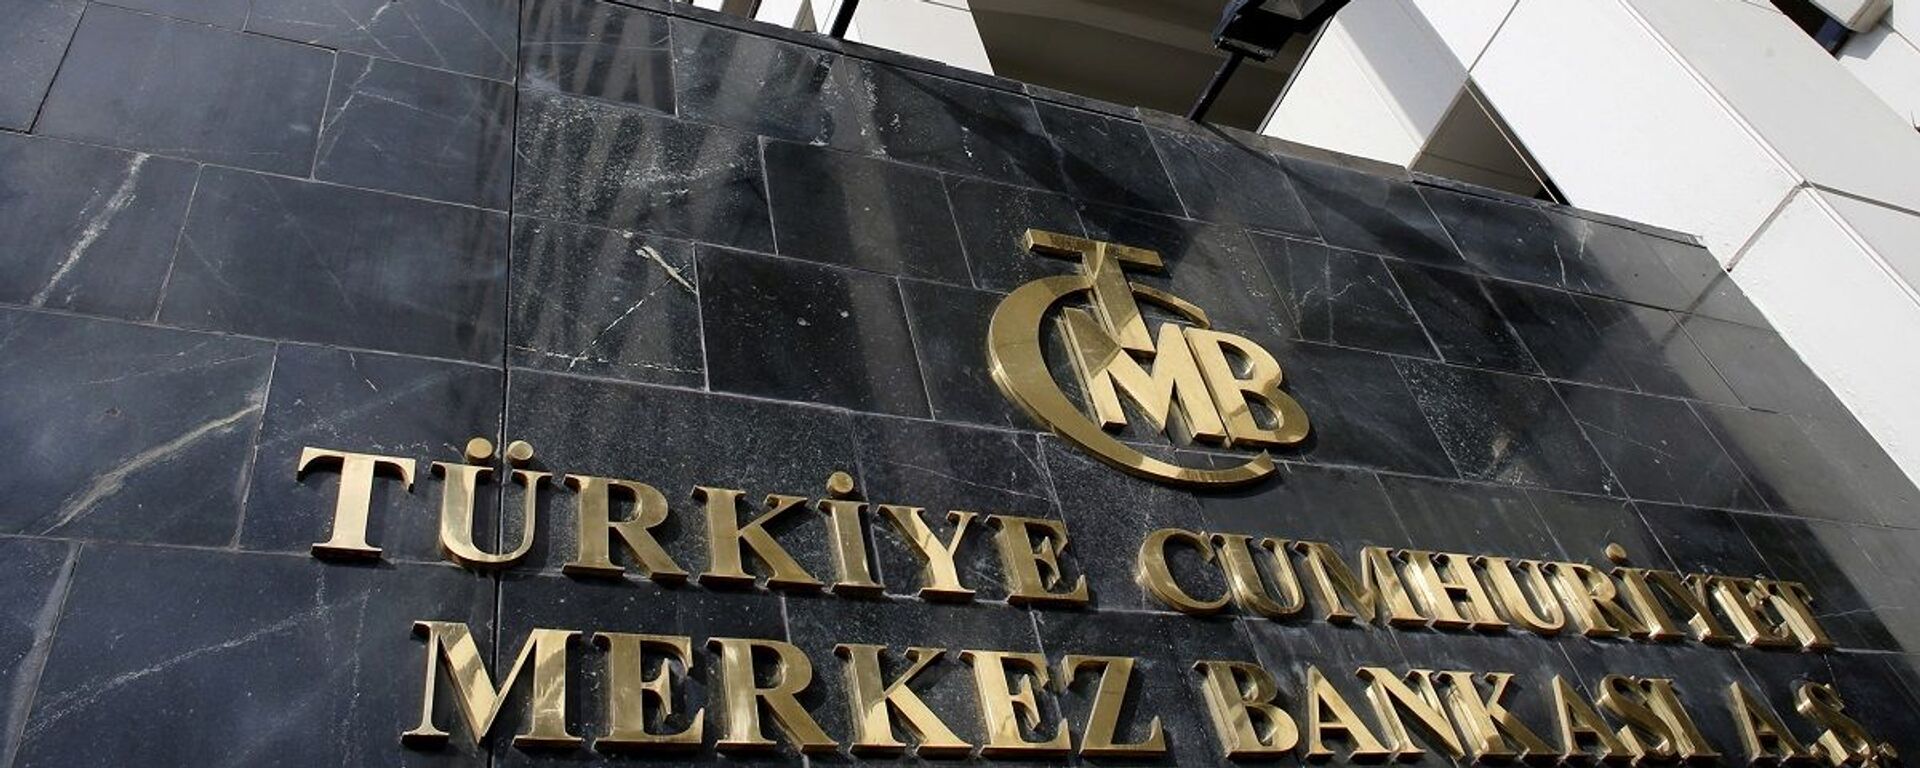 Merkez Bankası - Sputnik Türkiye, 1920, 22.12.2021